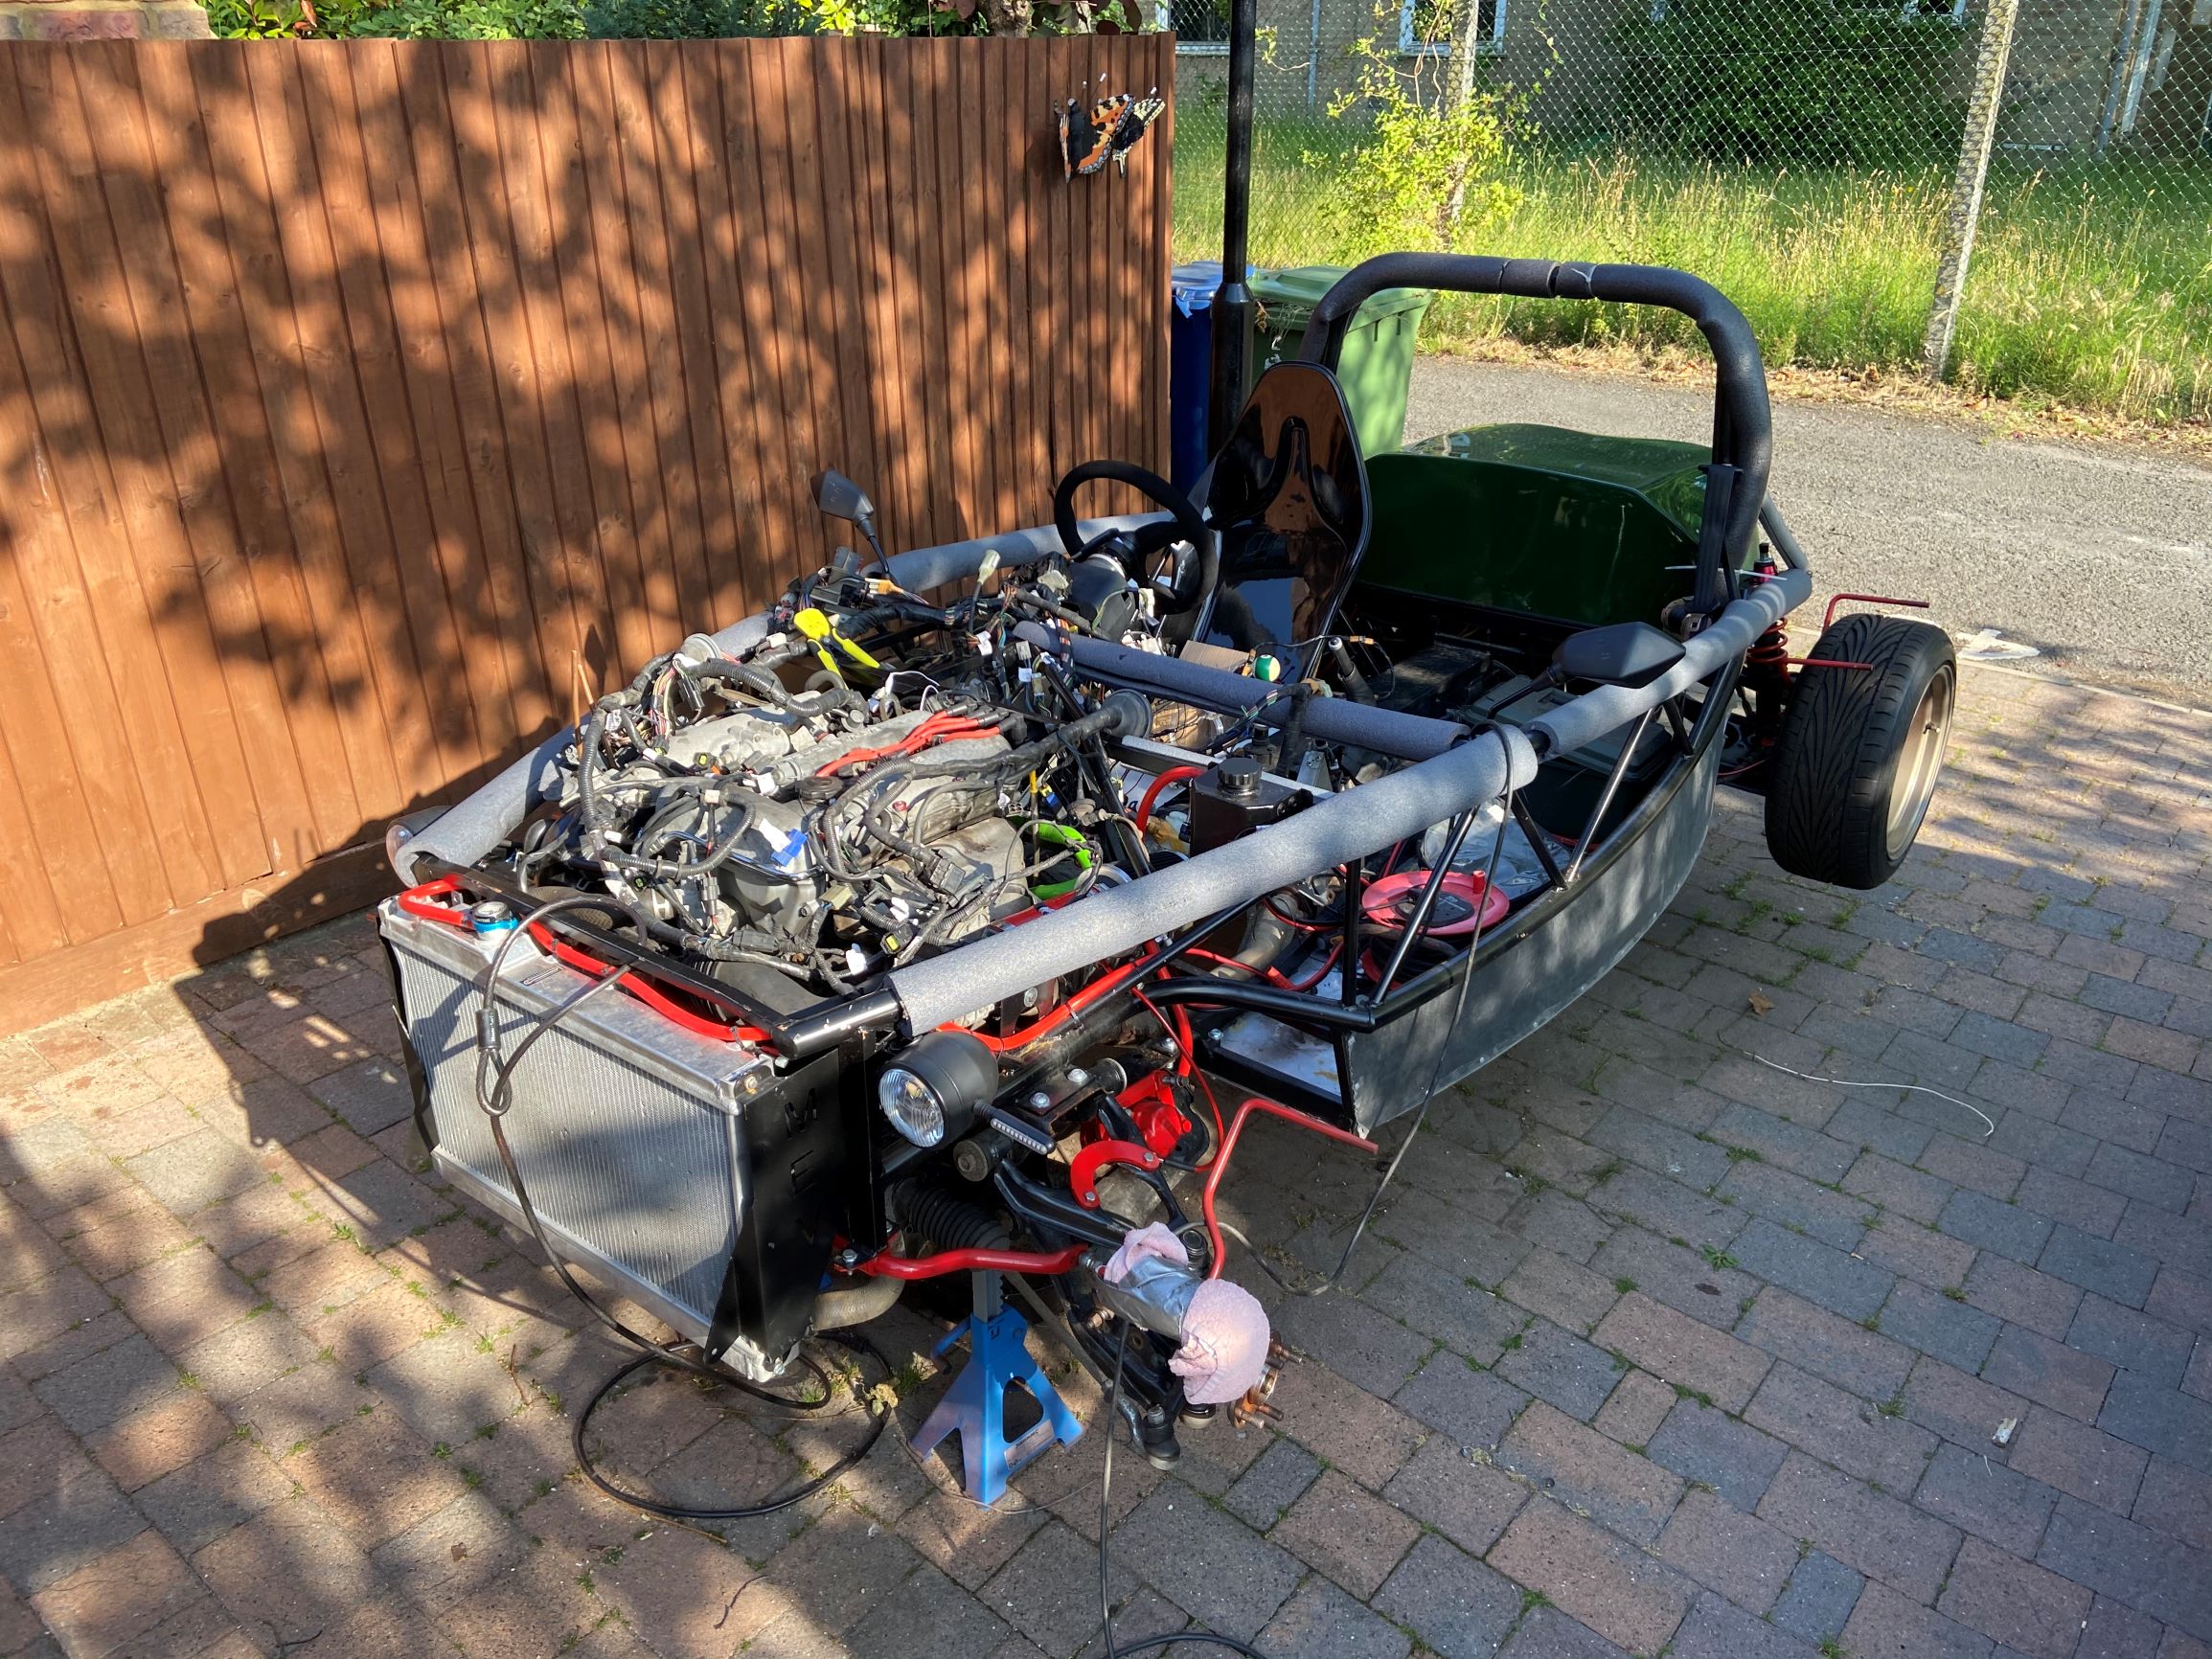 kit car being built